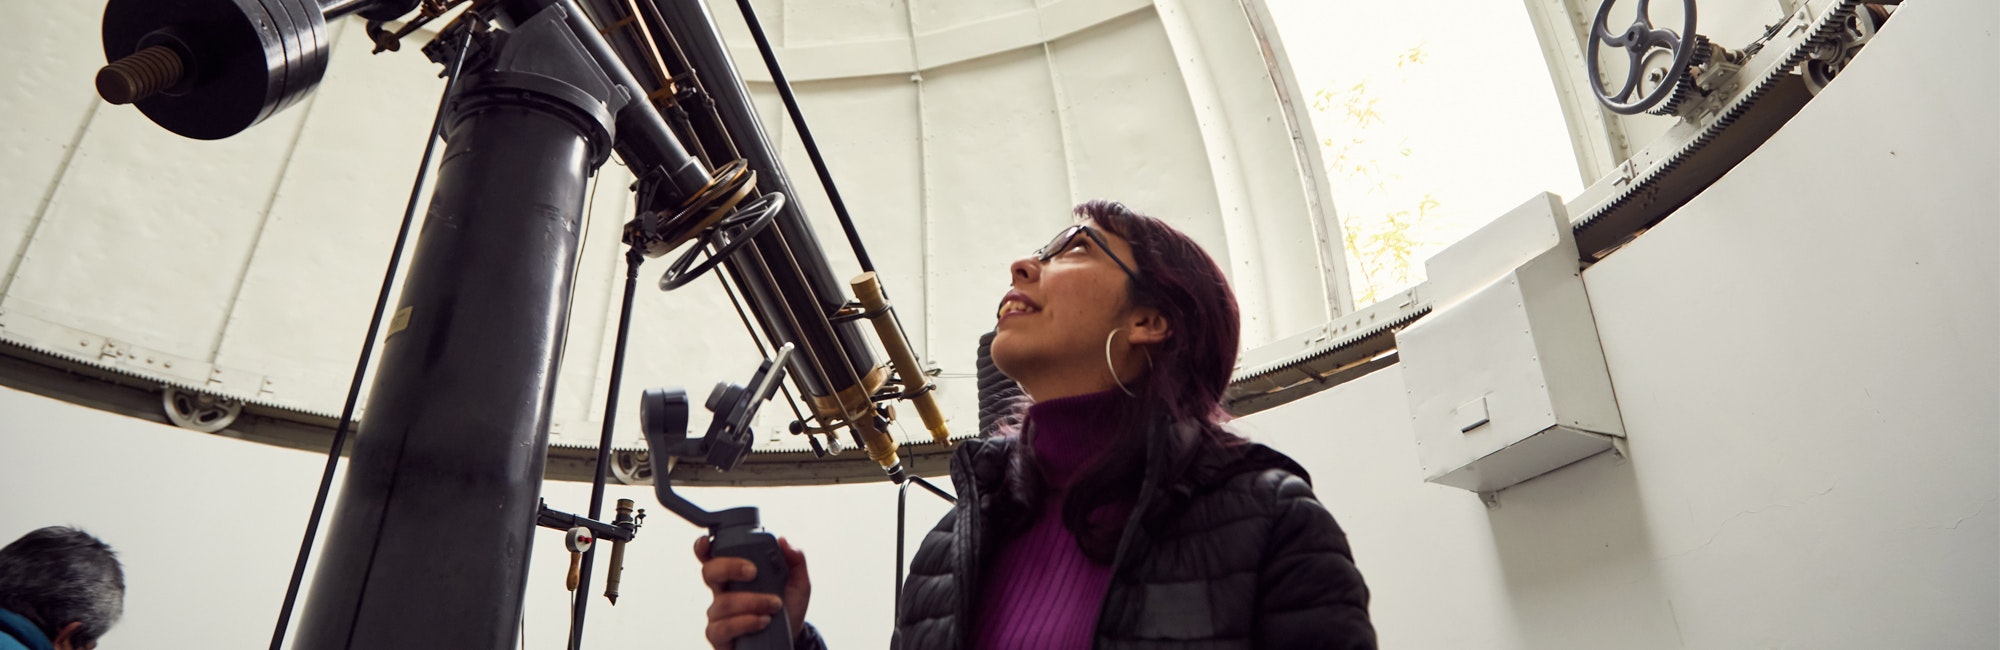 Mulher olhando para cima, à frente de um telescópio enorme